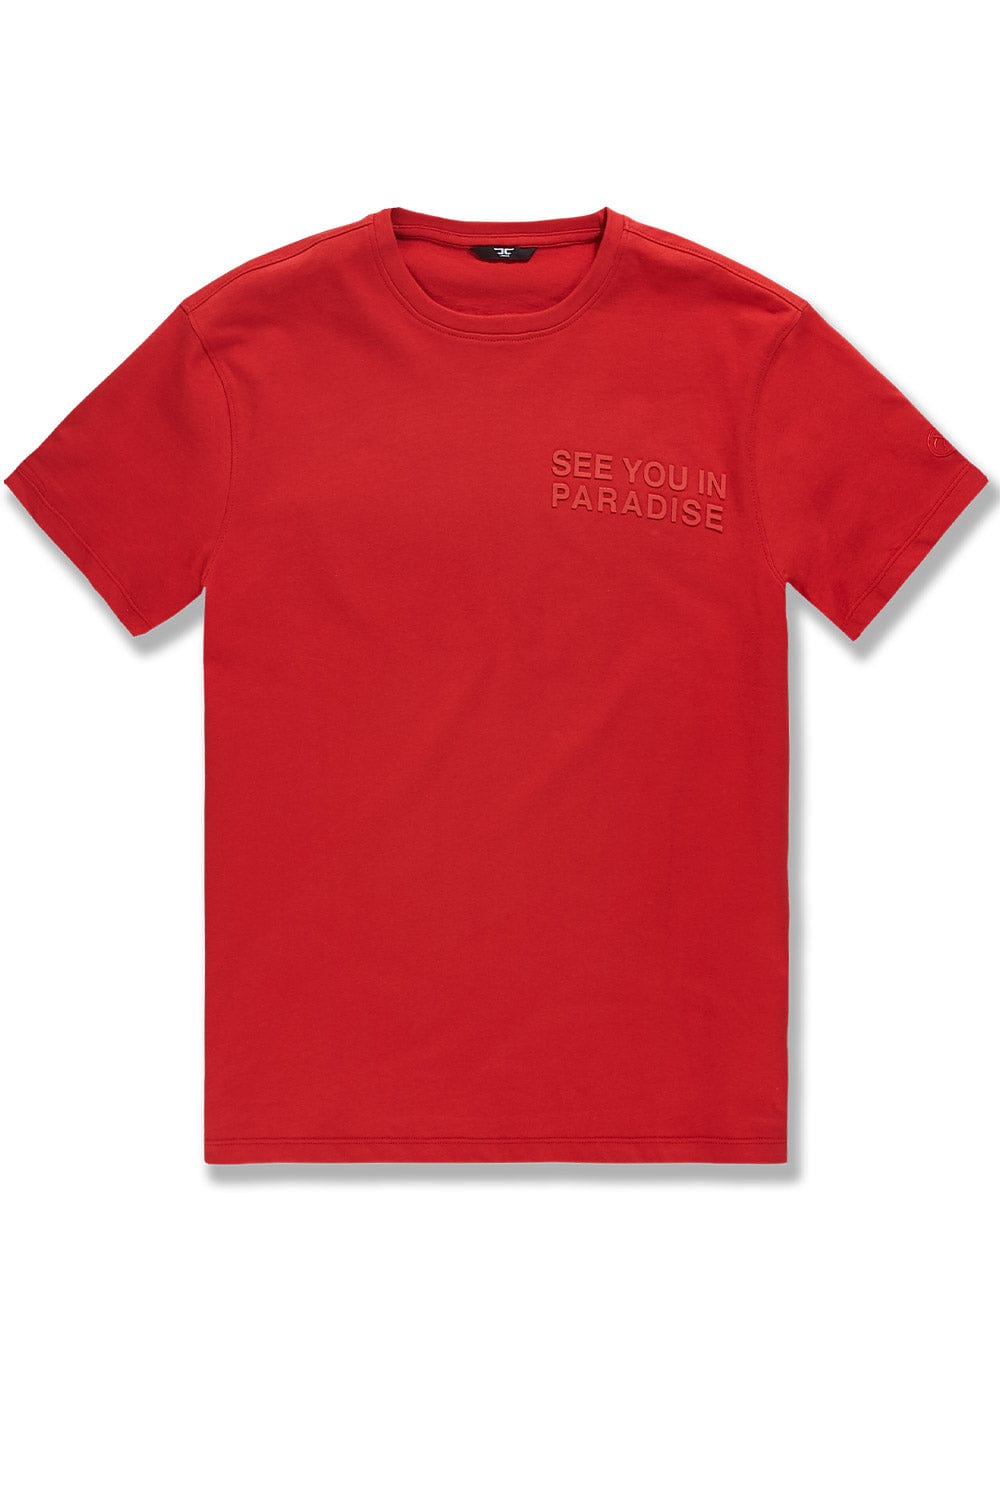 Jordan Craig Paradise Tonal T-Shirt Red / S